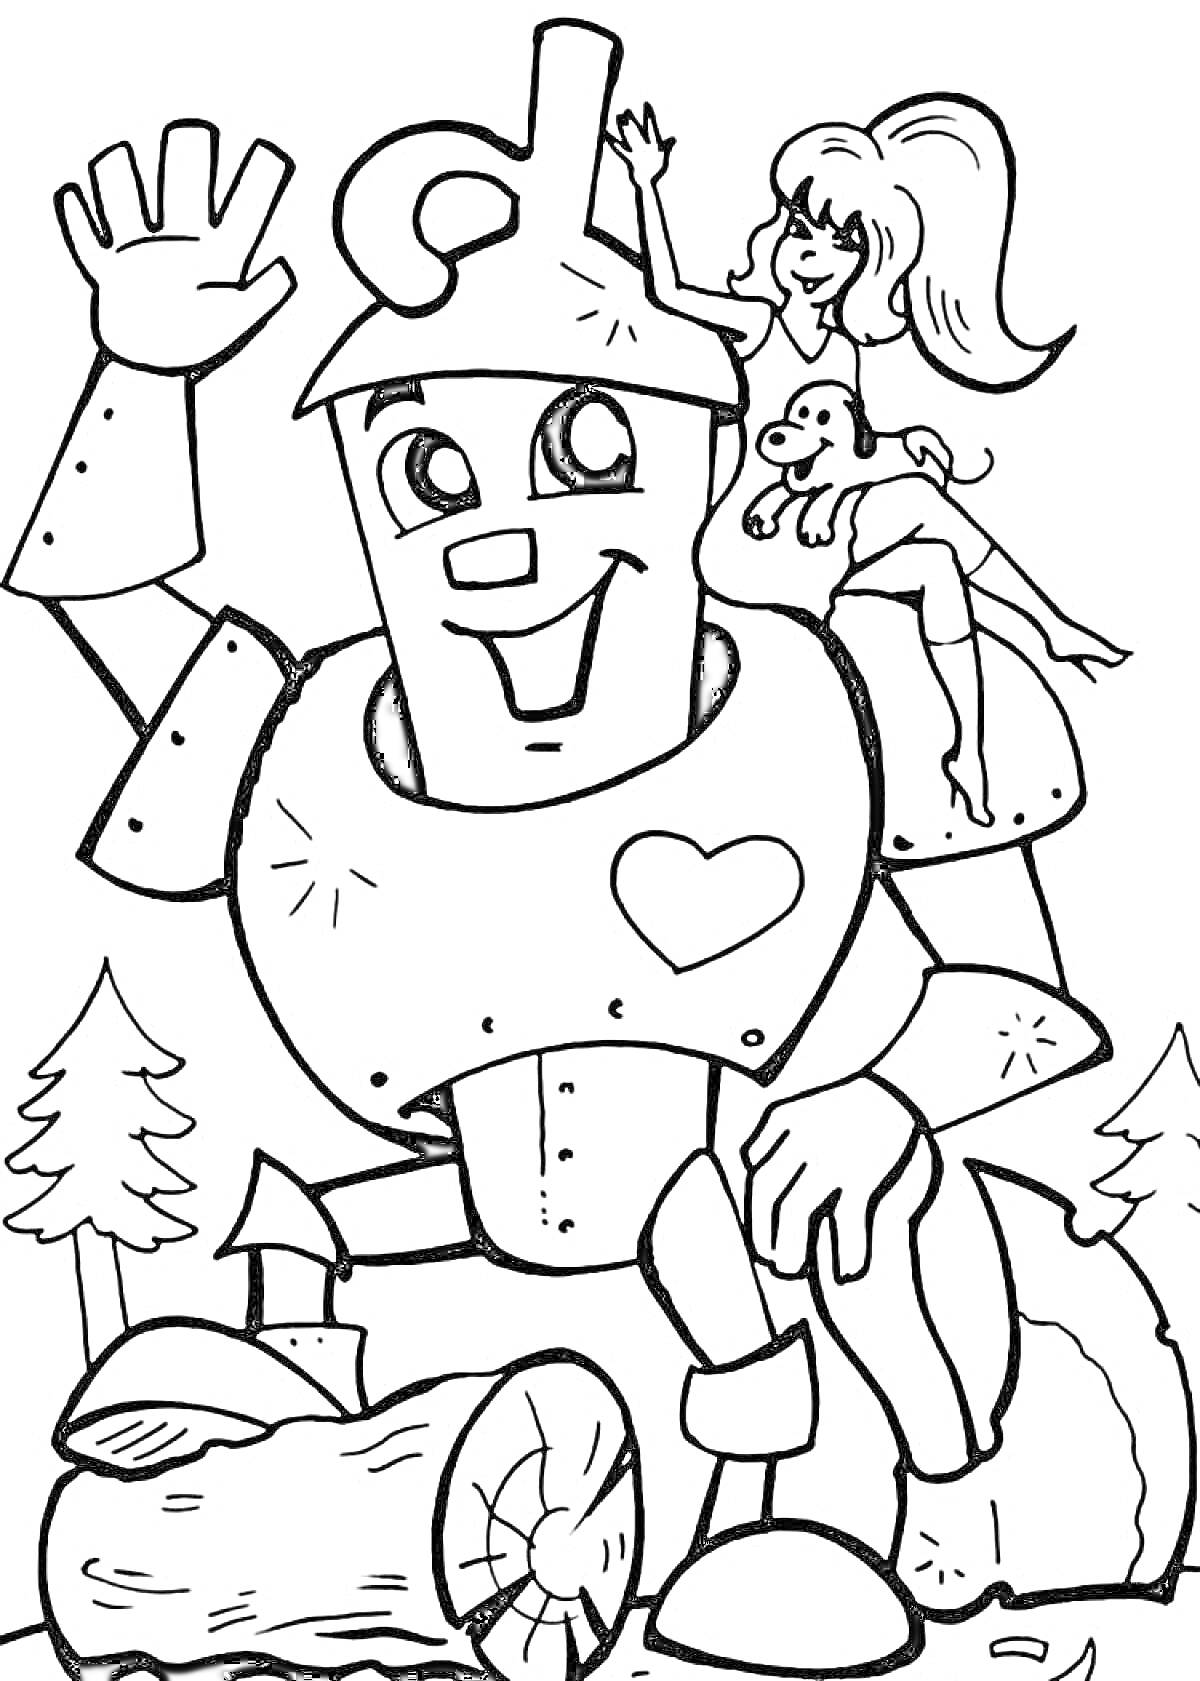 Раскраска Железный человек с сердцем и девочкой на плече на фоне леса и дров